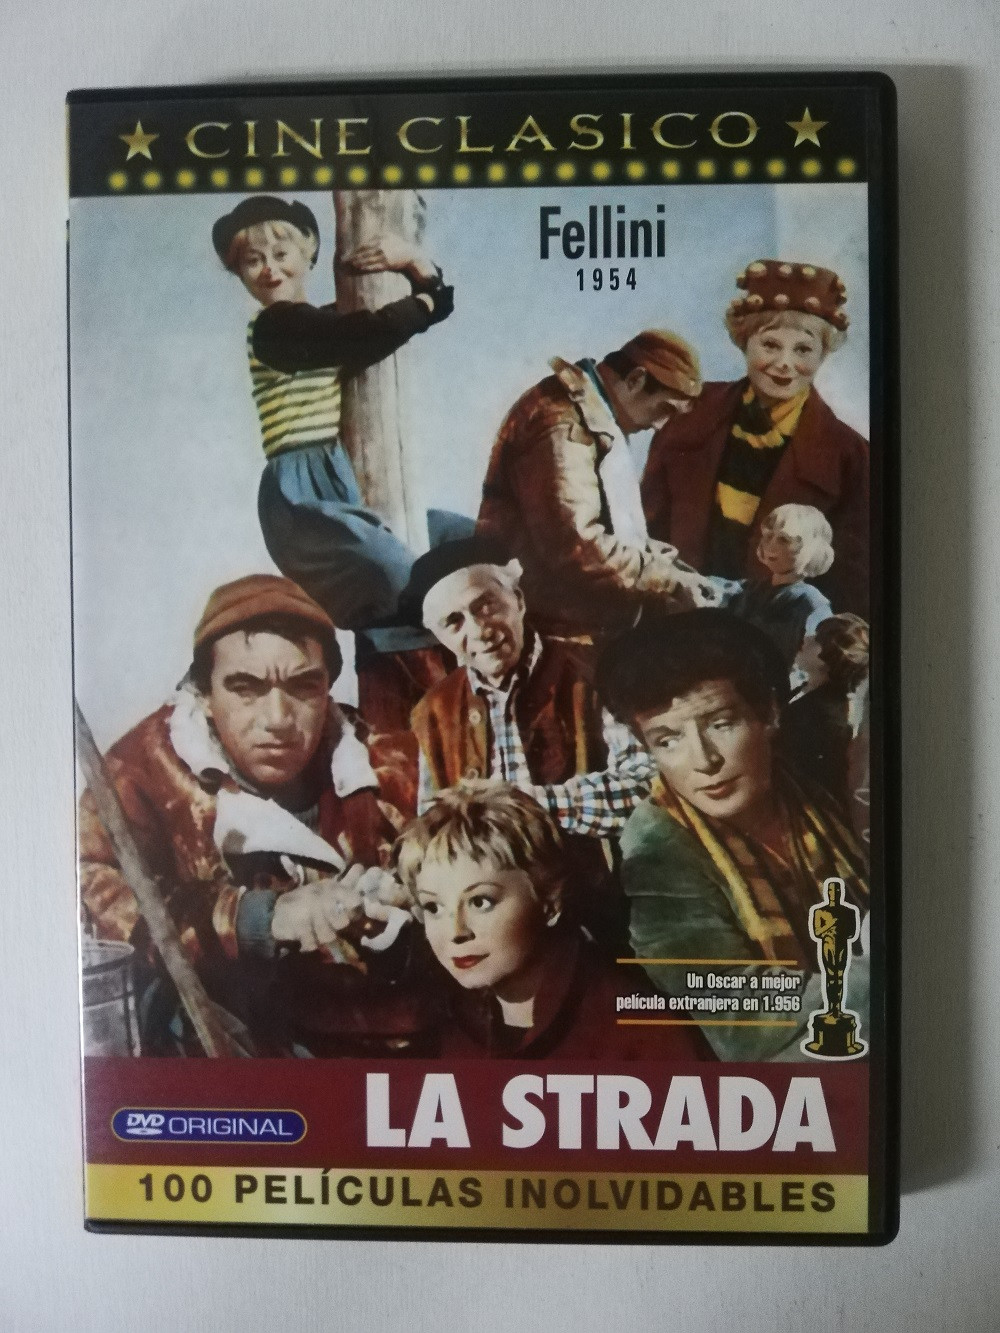 Imagen DVD LA STRADA - FELLINI 1